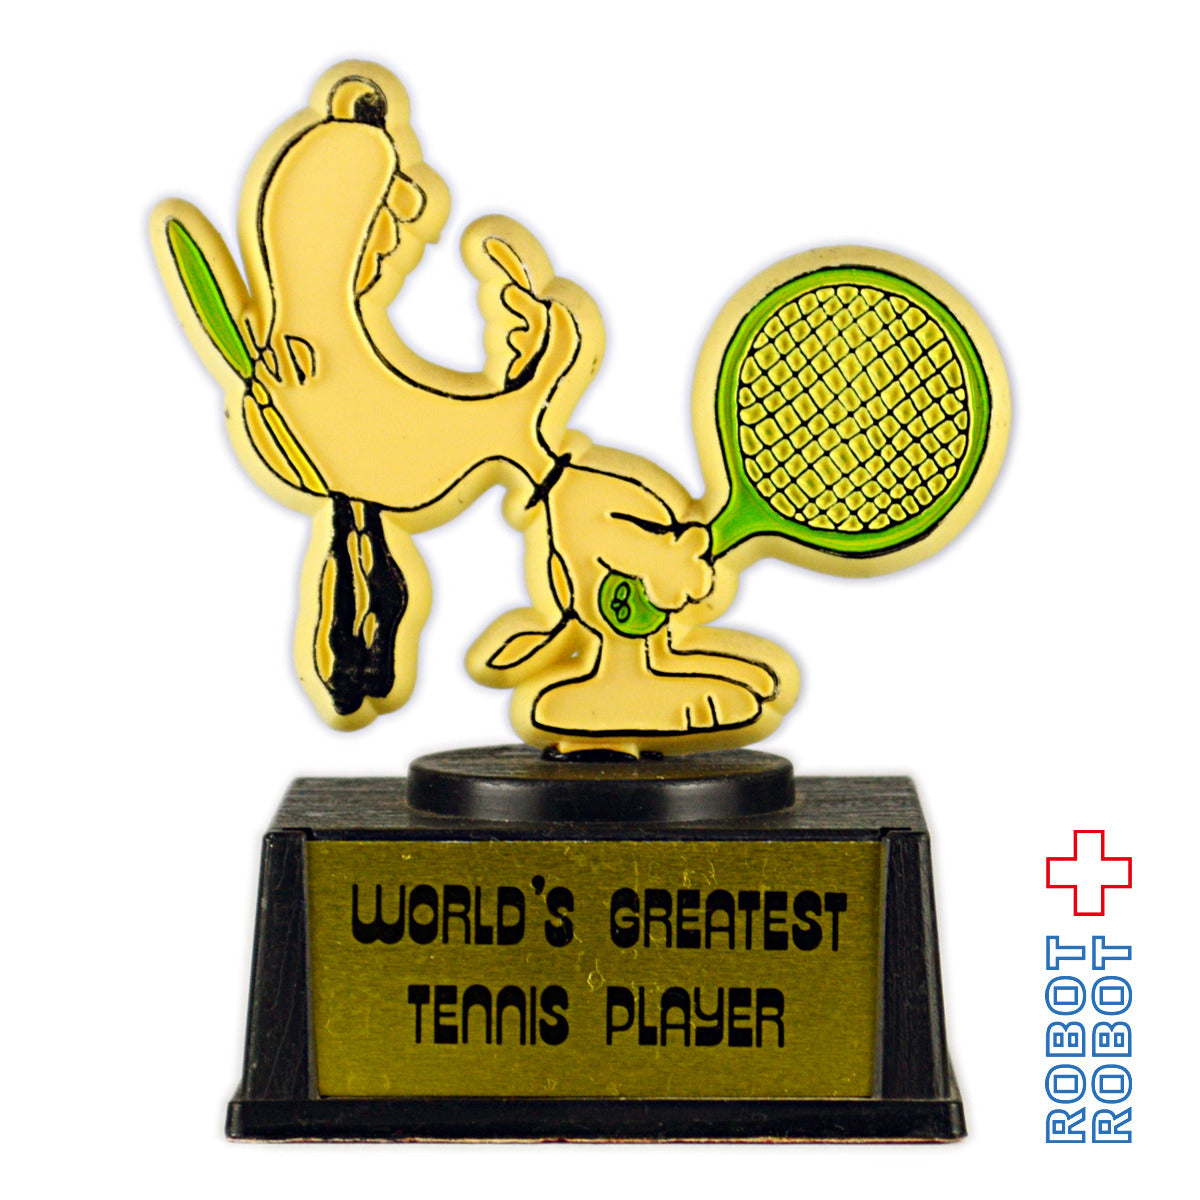 スヌーピー AVIVAトロフィー ワールドグレイテストテニスプレイヤー Snoopy Trophy WORLD'S GREATEST TENNIS PLAYER